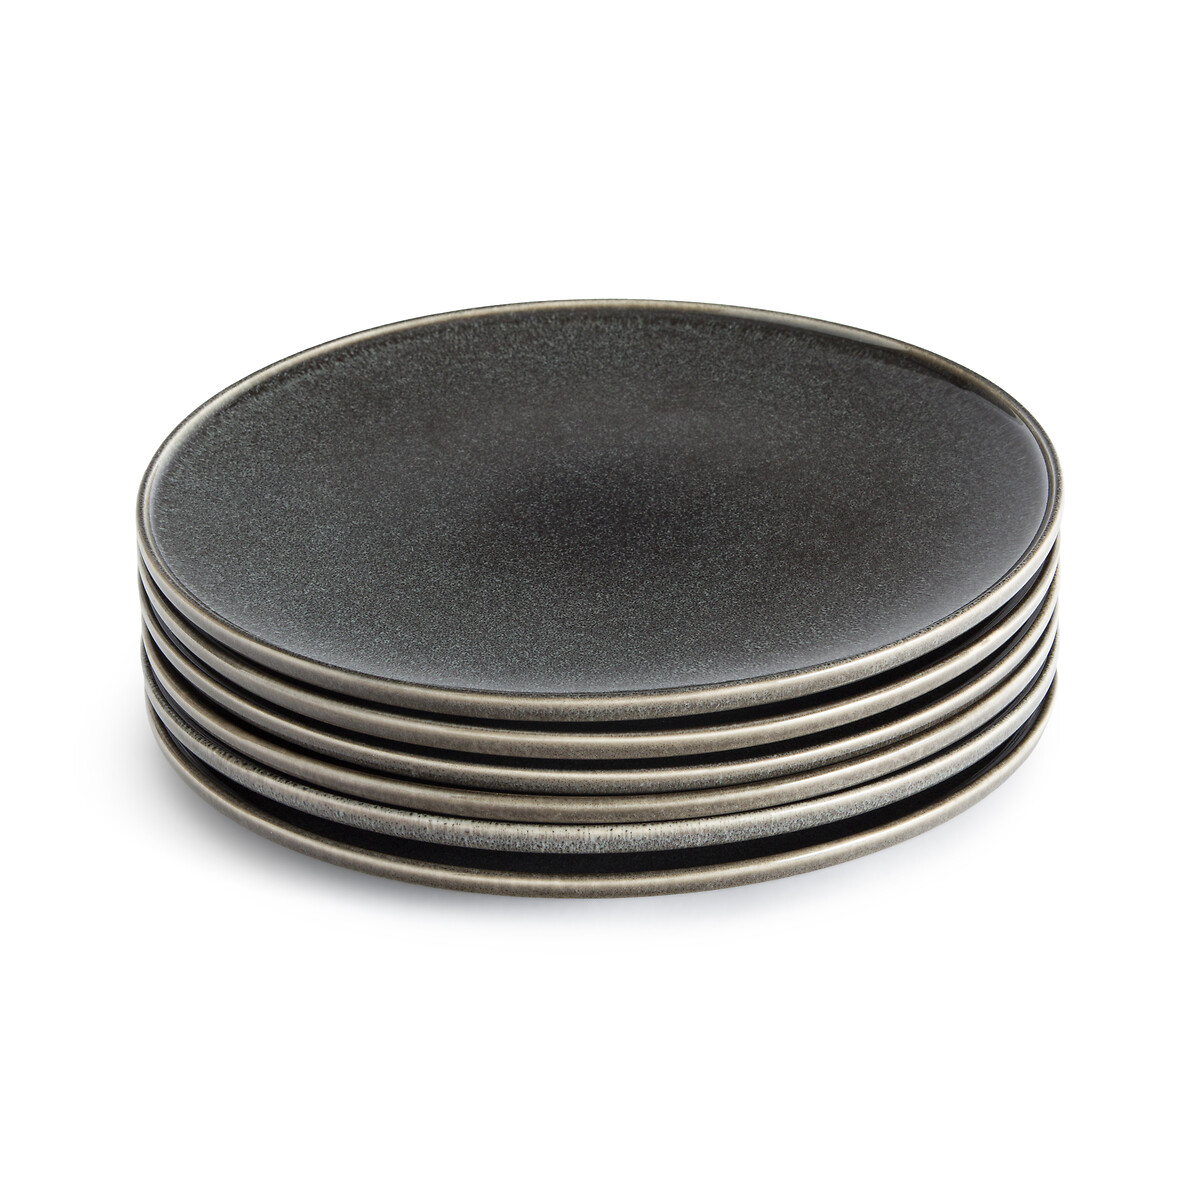 Комплект из шести тарелок плоских из керамики Onda единый размер серый комплект из 4 плоских тарелок из глазурованной керамики preto единый размер серый